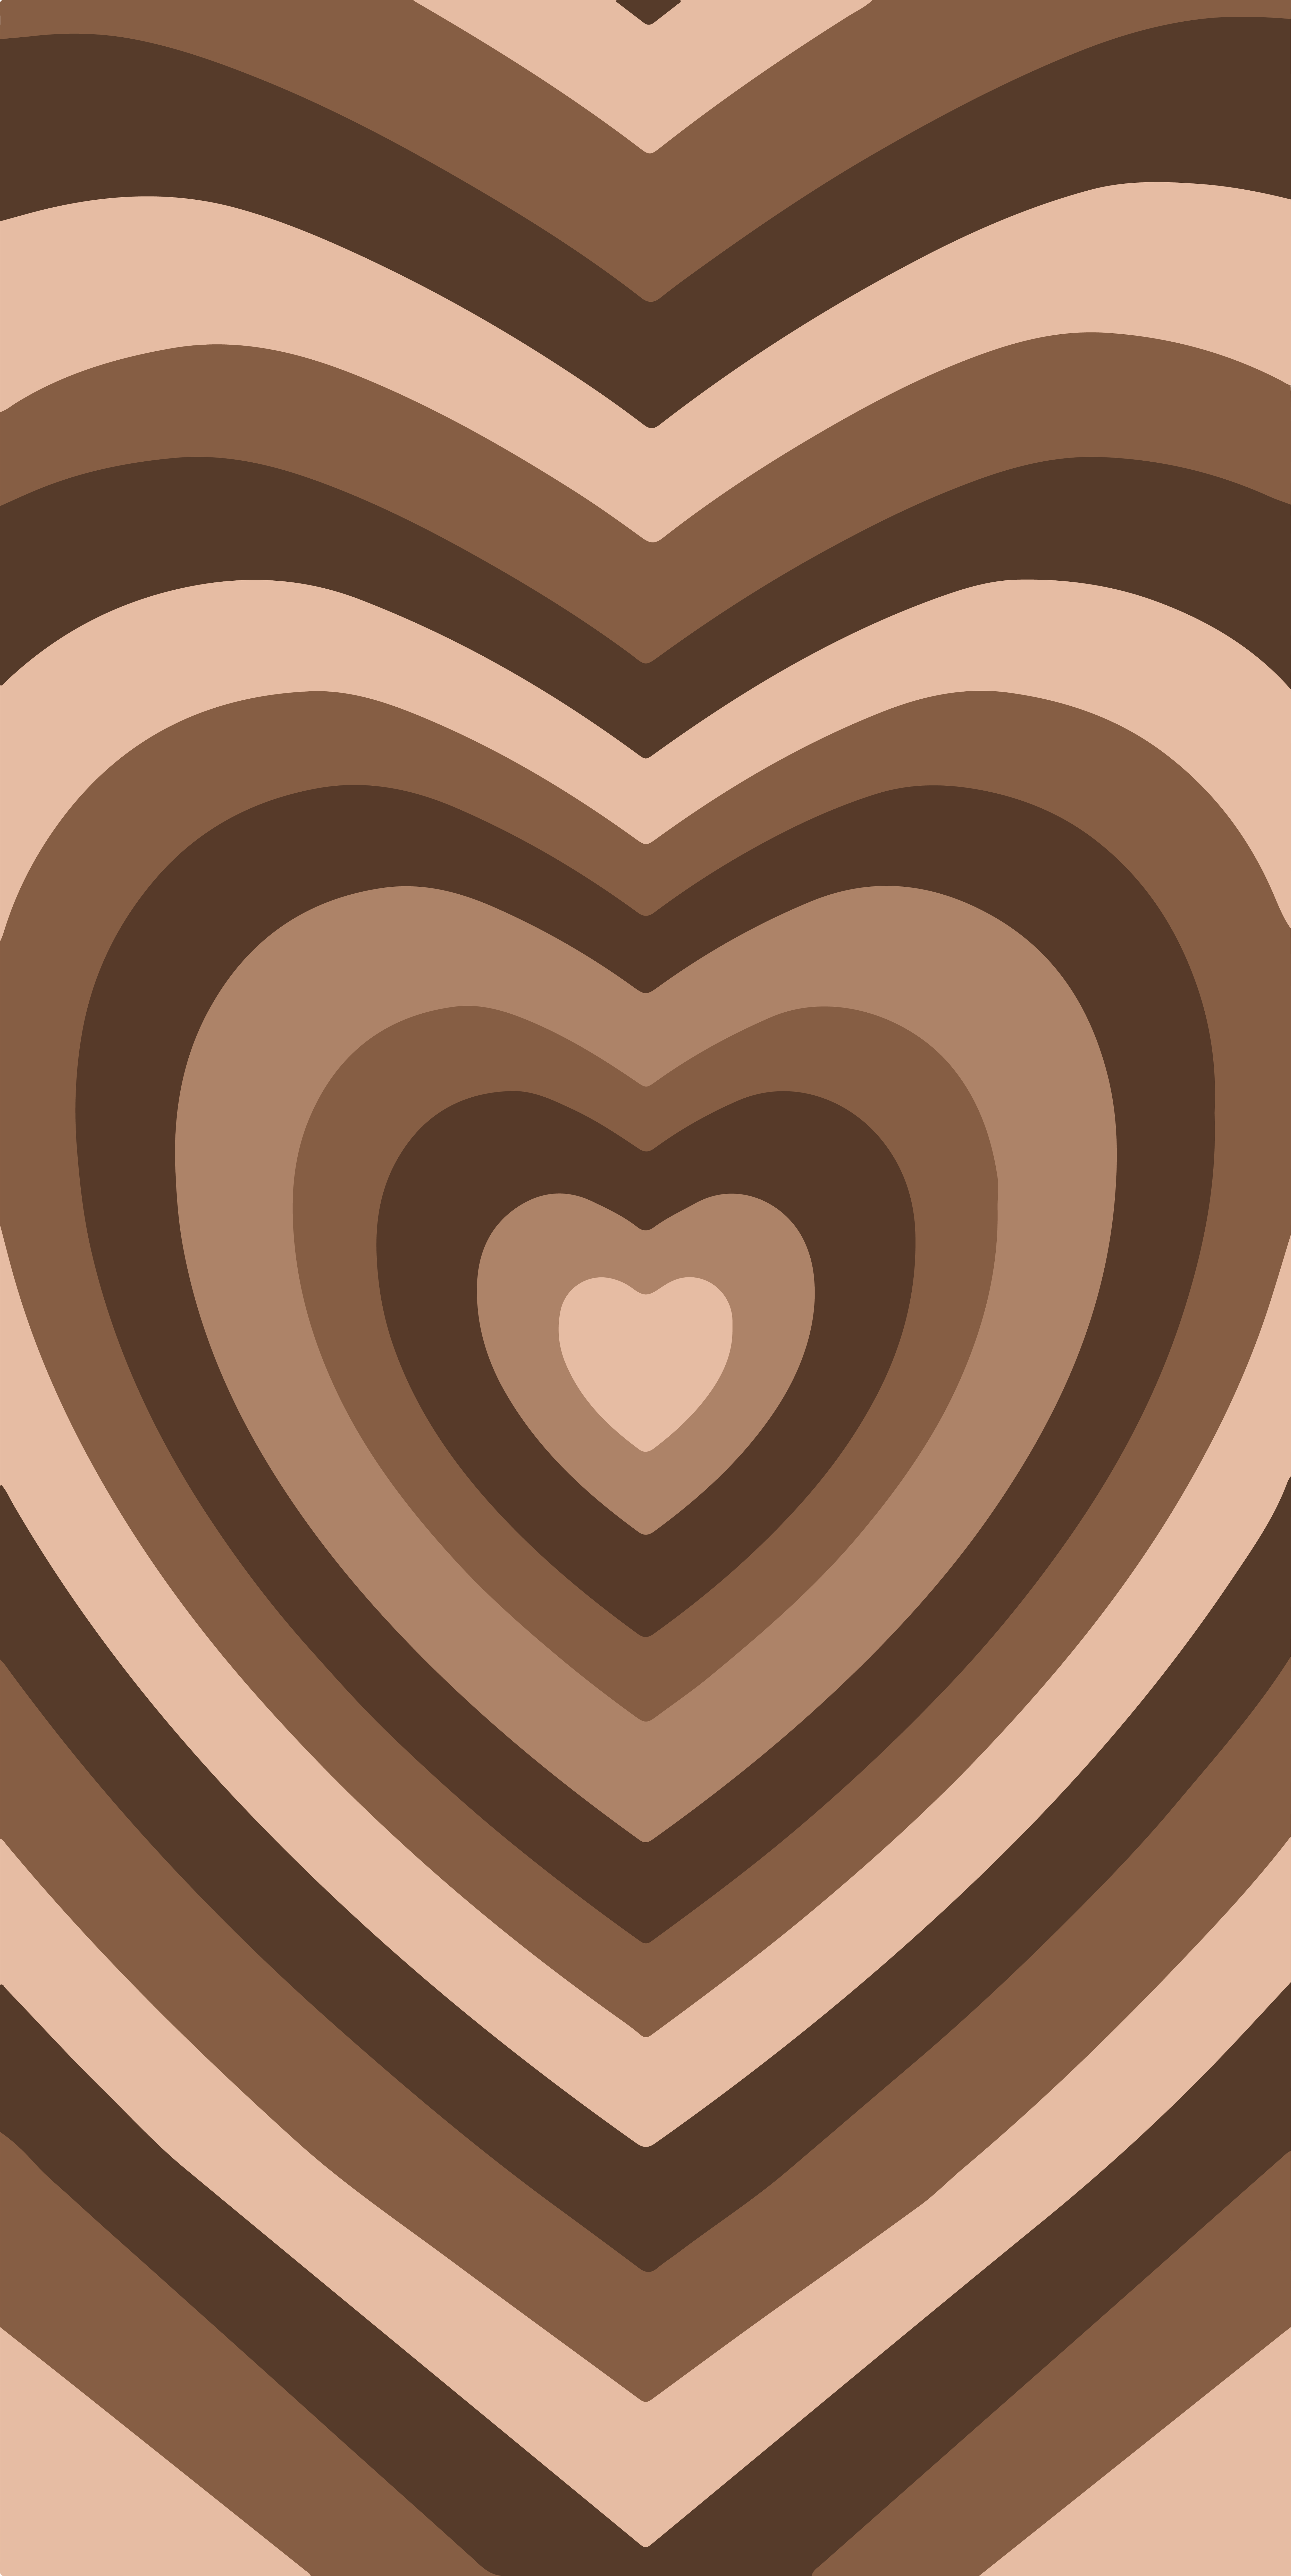 brown powerpuff girls intro. Phone wallpaper patterns, iPhone wallpaper pattern, Heart wallpaper